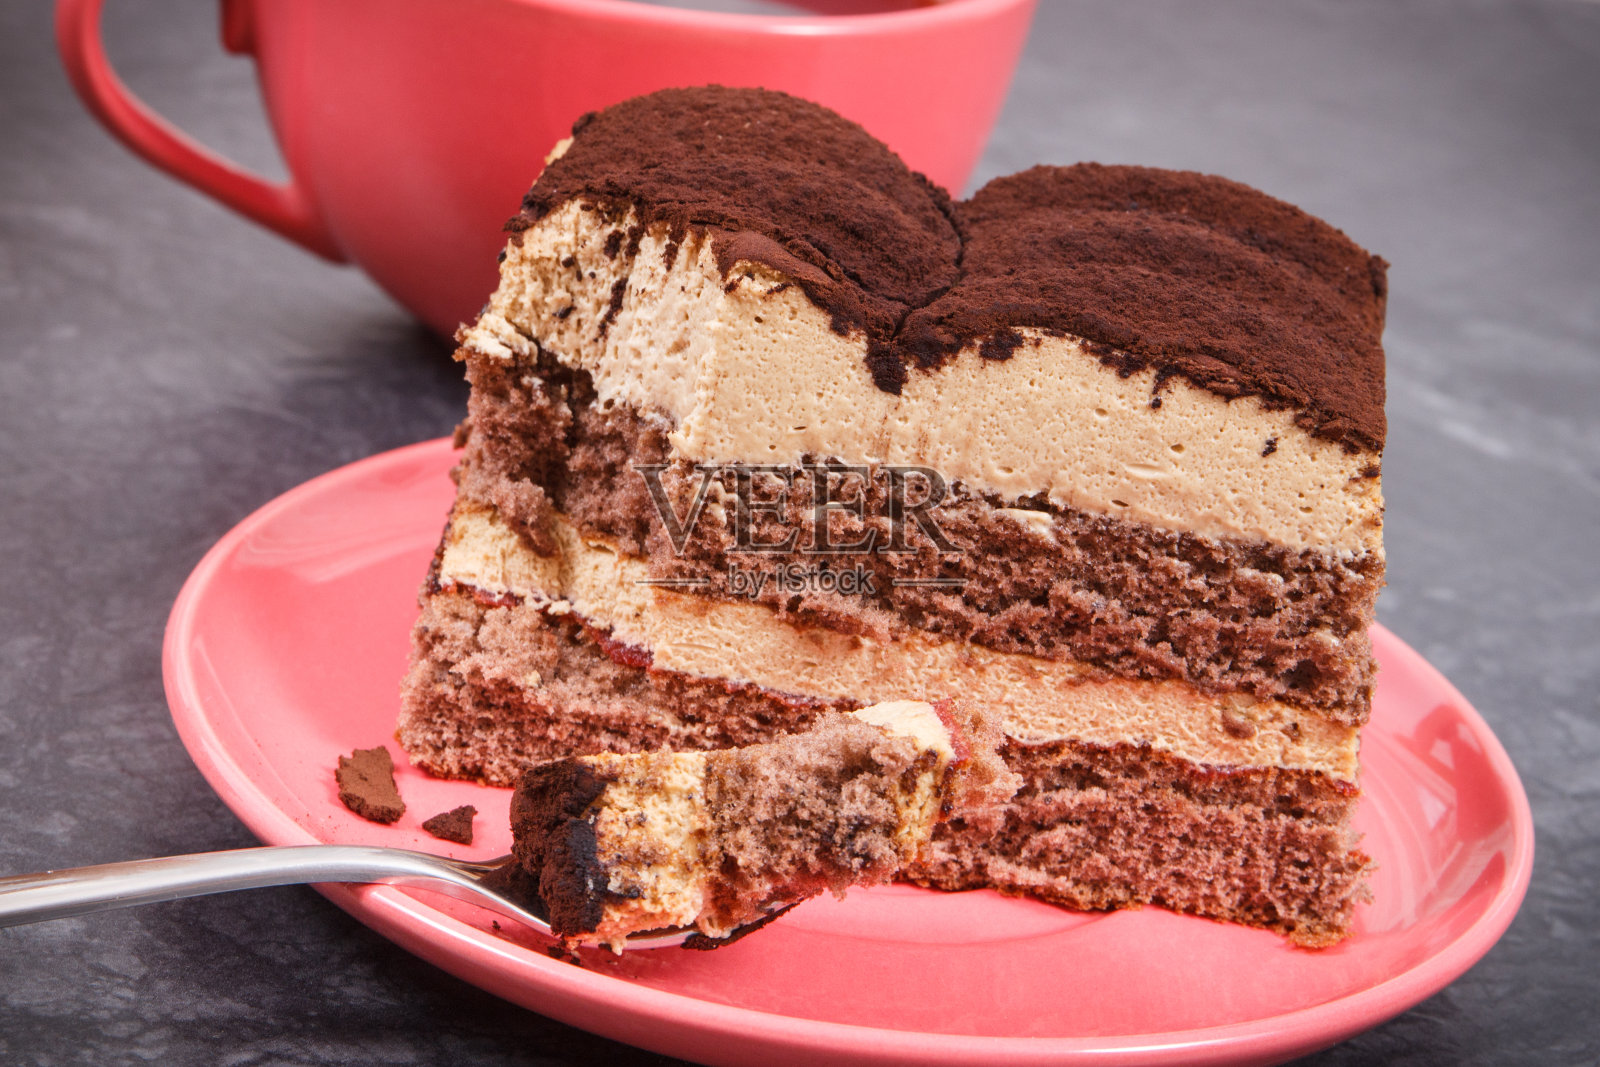 奶油提拉米苏蛋糕有不同的层次和黑咖啡。美味的庆祝甜点照片摄影图片